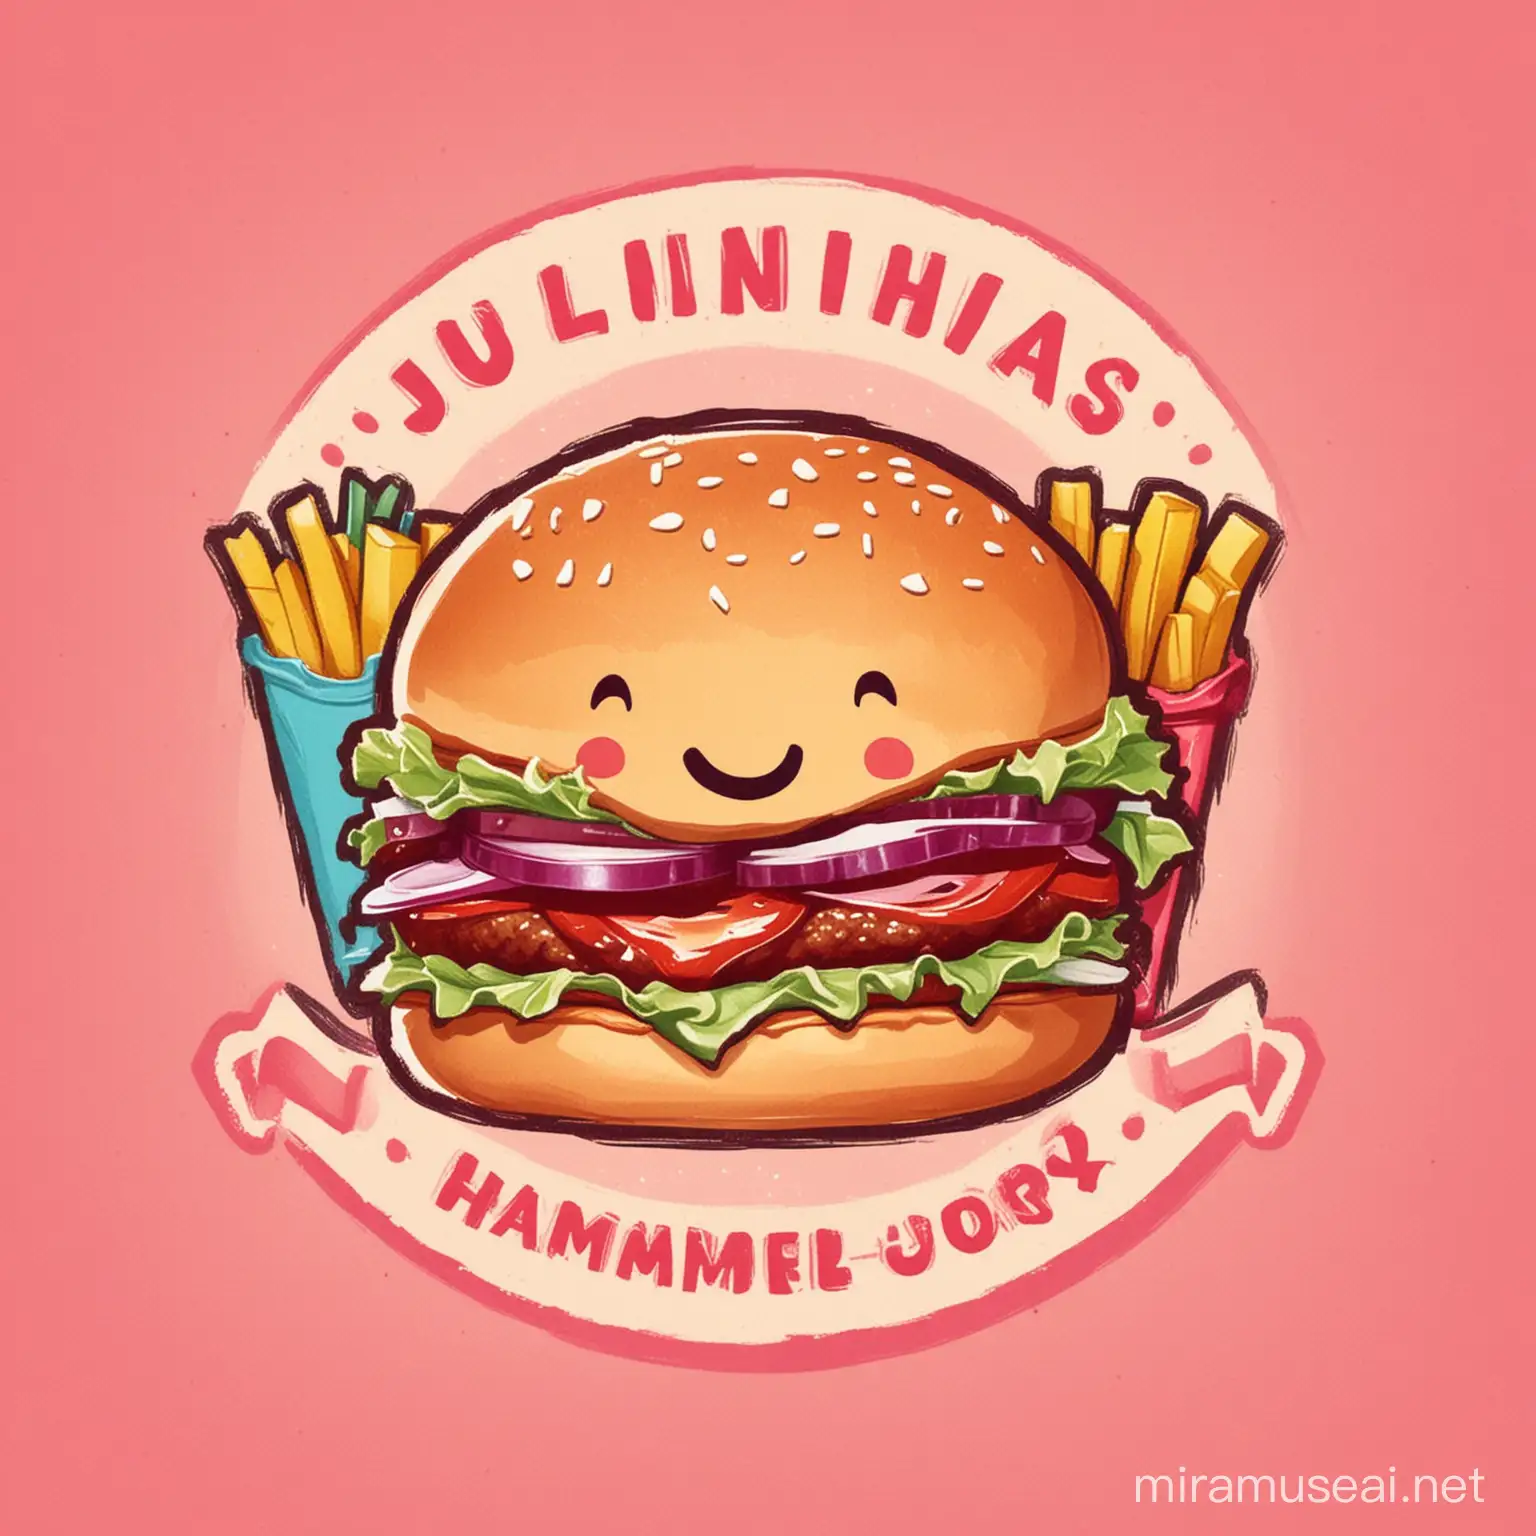 logomarca para a hamburgueria Julinha's Burger. A logo é formada por um sorriso com um lanche e batatas fritas de fundo.

Cartoon style, feliz e temática infantil e rosa